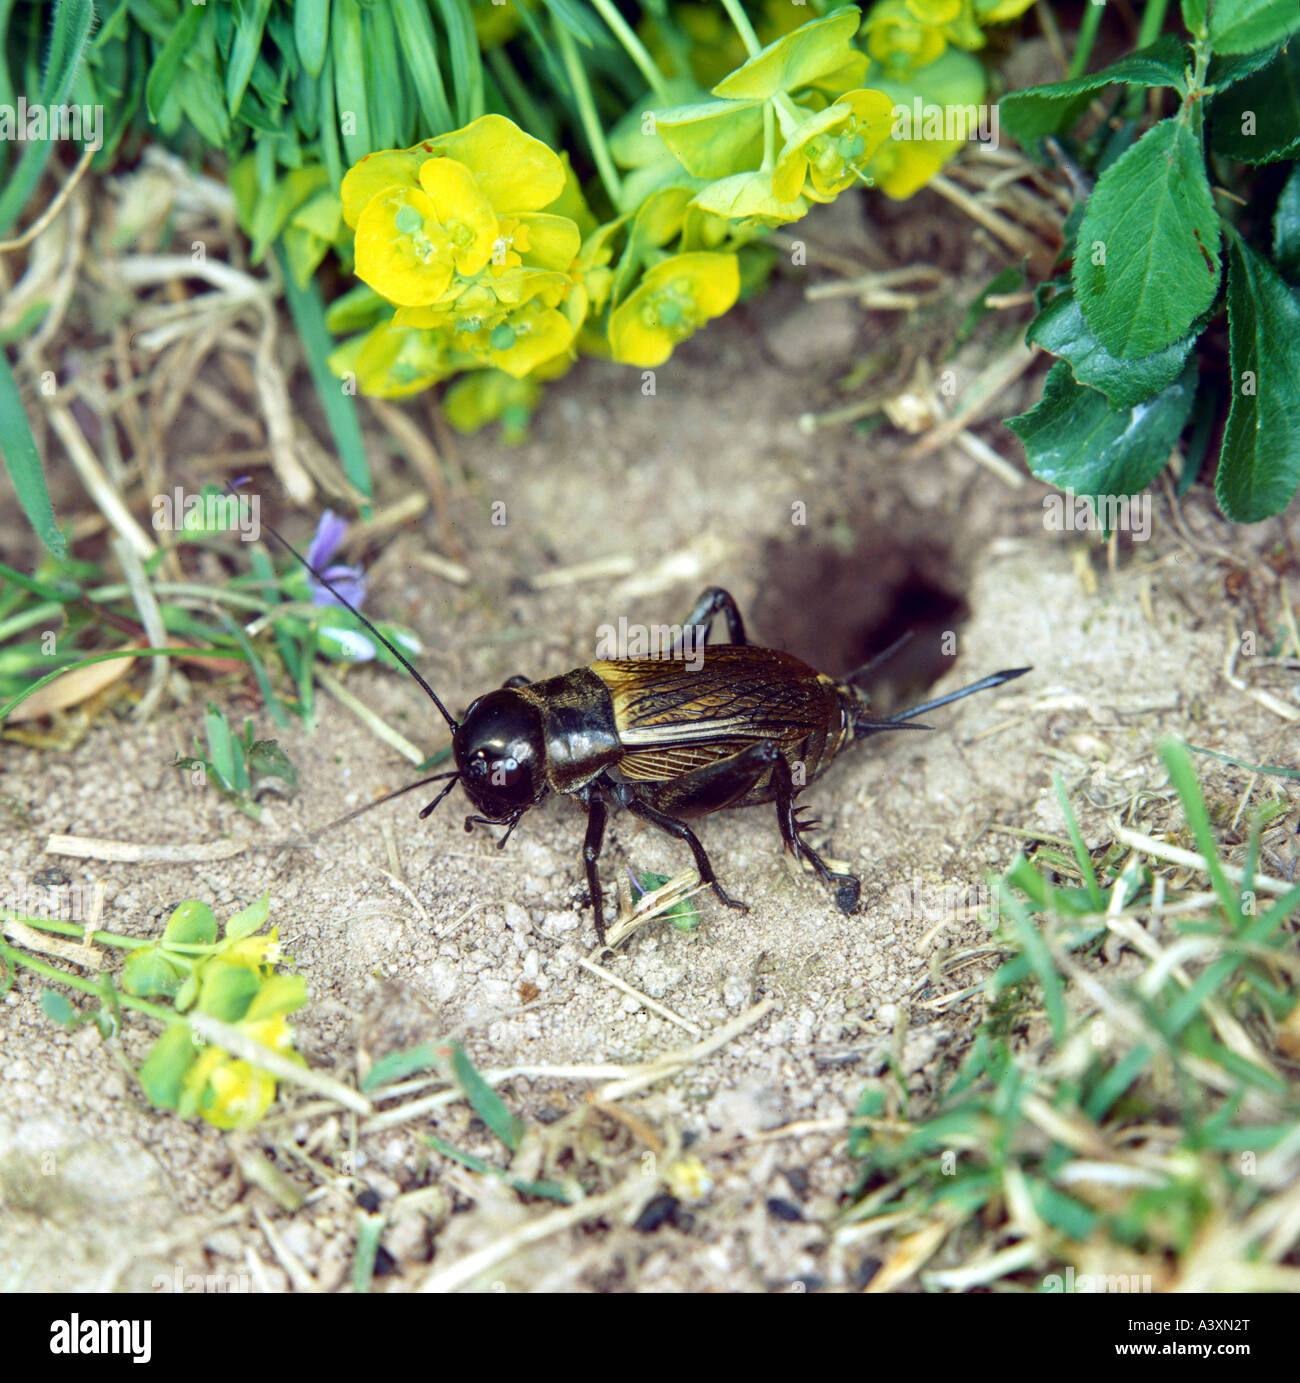 Zoologie / Tiere, Insekten, Heuschrecken, Field Cricket (Gryllus Campestris), weibliche Heuschrecke vor Boden Loch, close-up, Distri Stockfoto